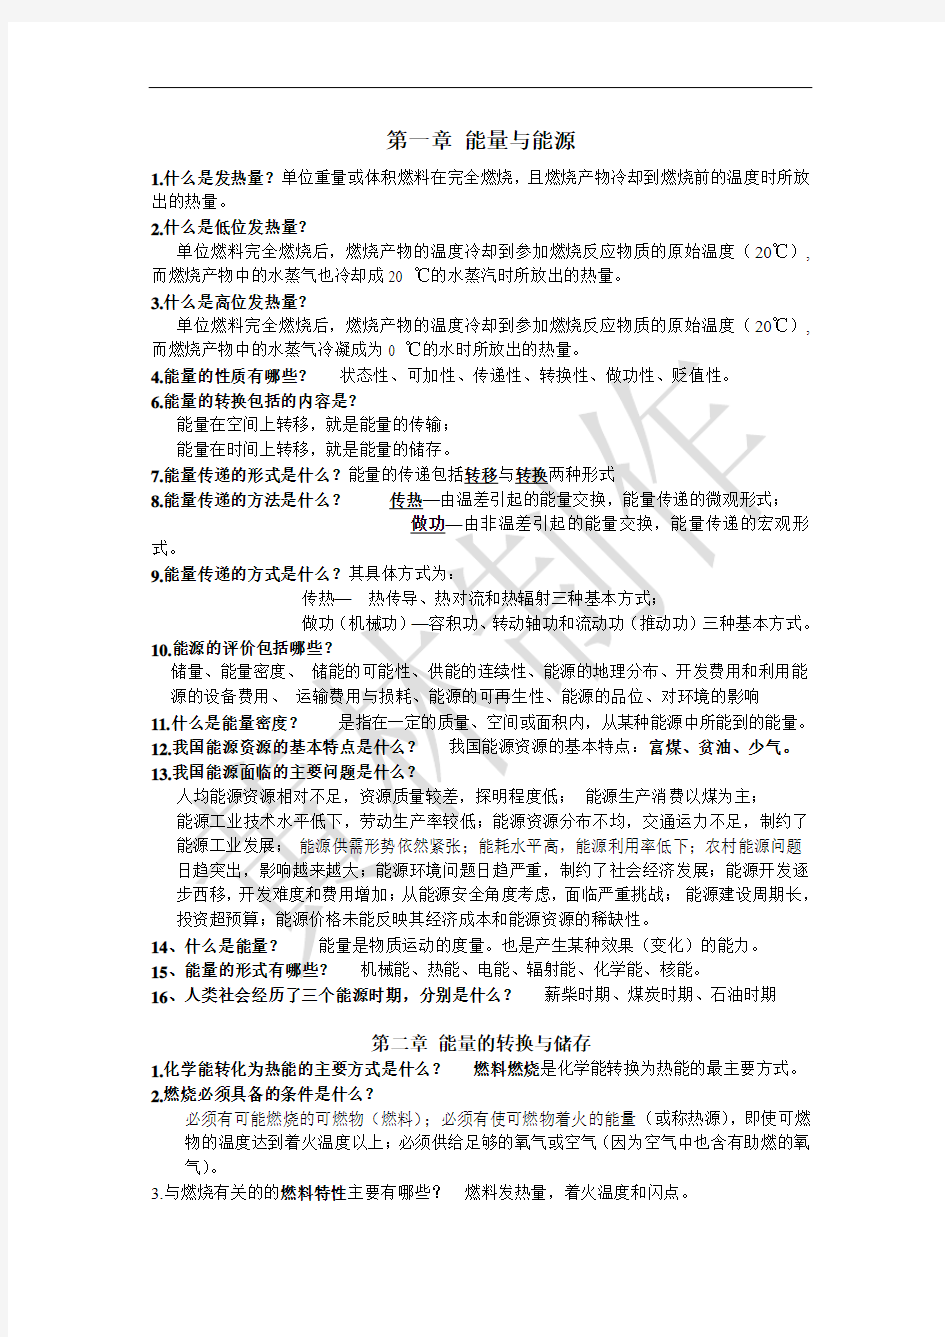 云南农业大学能源概论复习纲要(2013——2014) 你懂的!!!